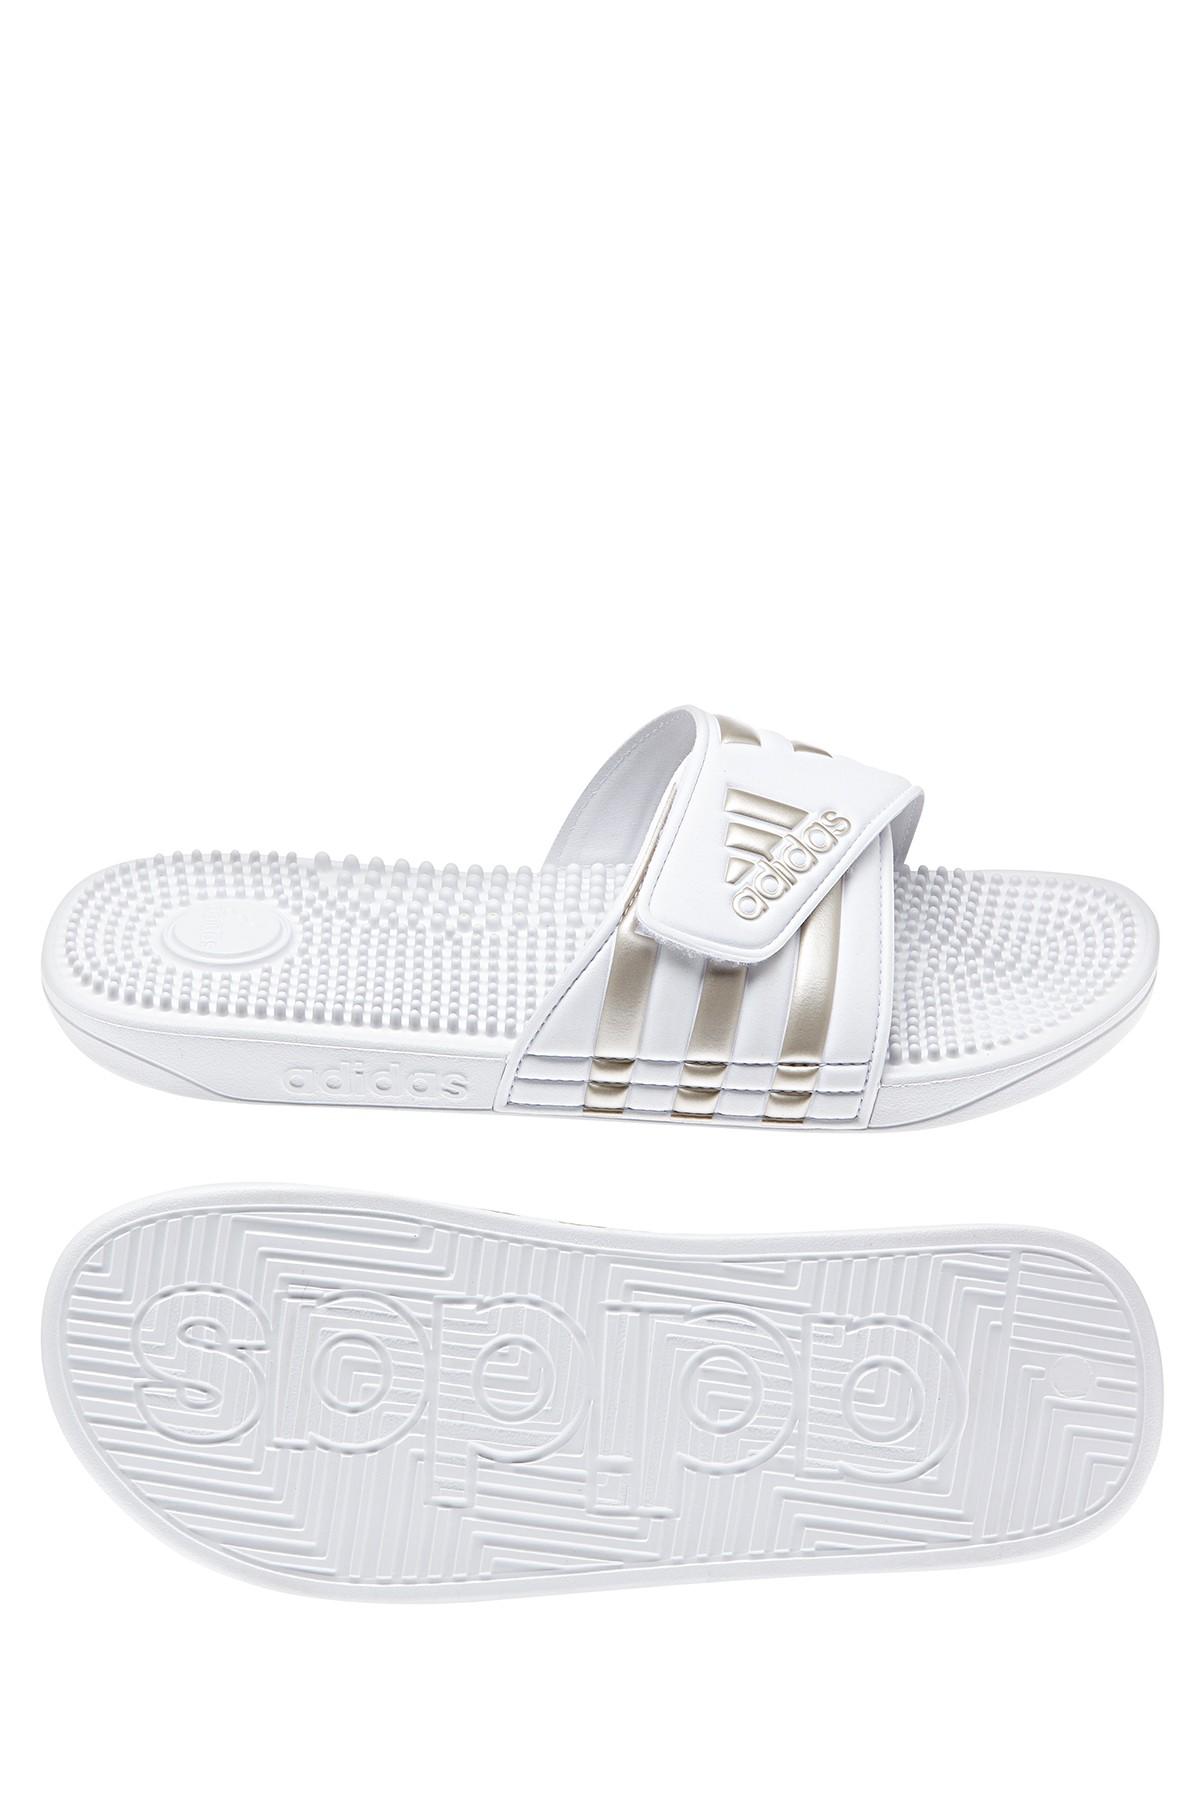 adidas Adissage Slide Sandals in White 